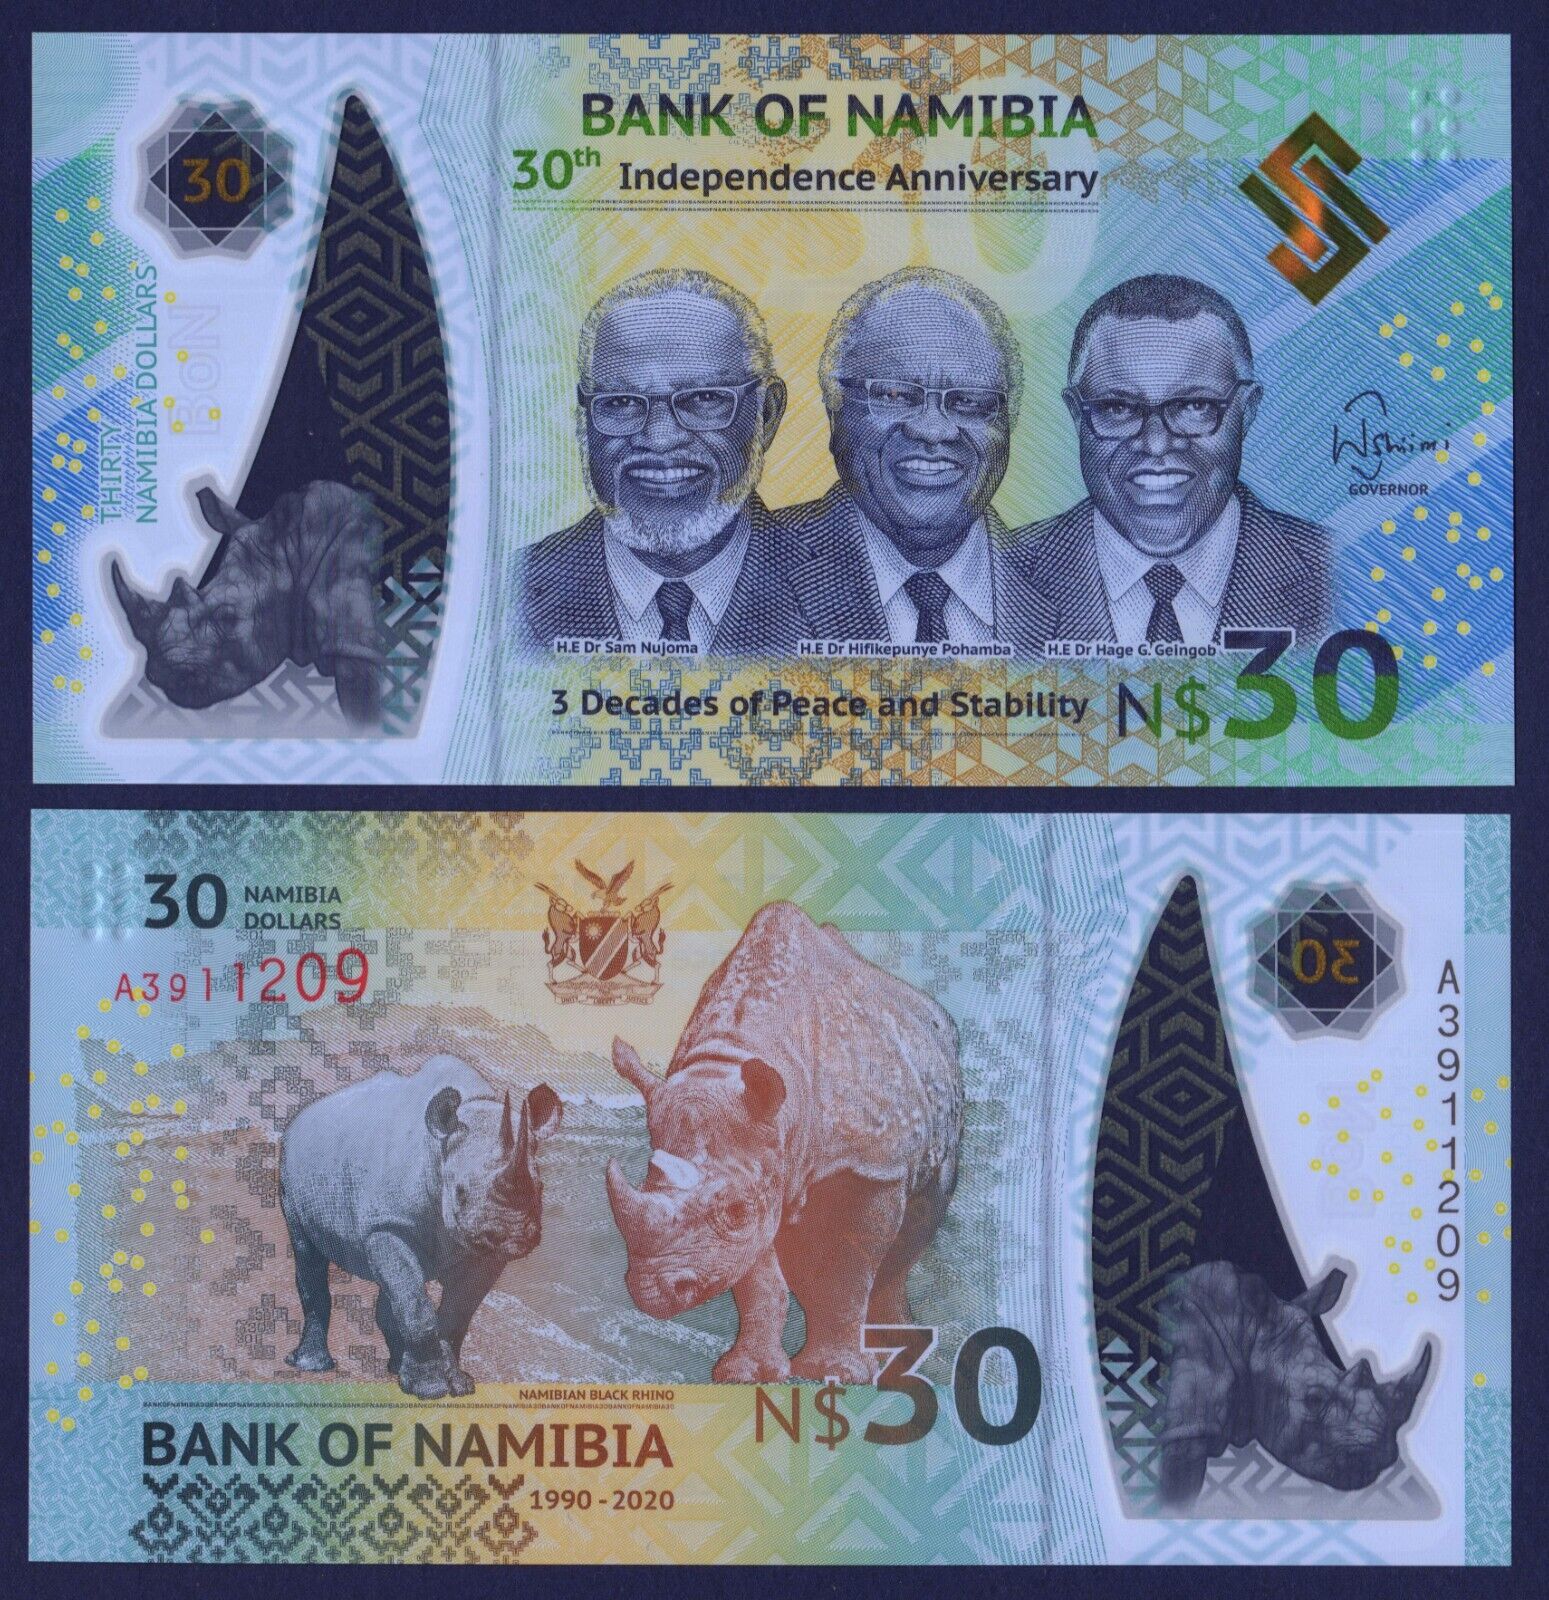 Tiền thế giới mệnh giá lạ 30 dollars POLYMER Namihia kỷ niệm 30 năm ngày độc lập